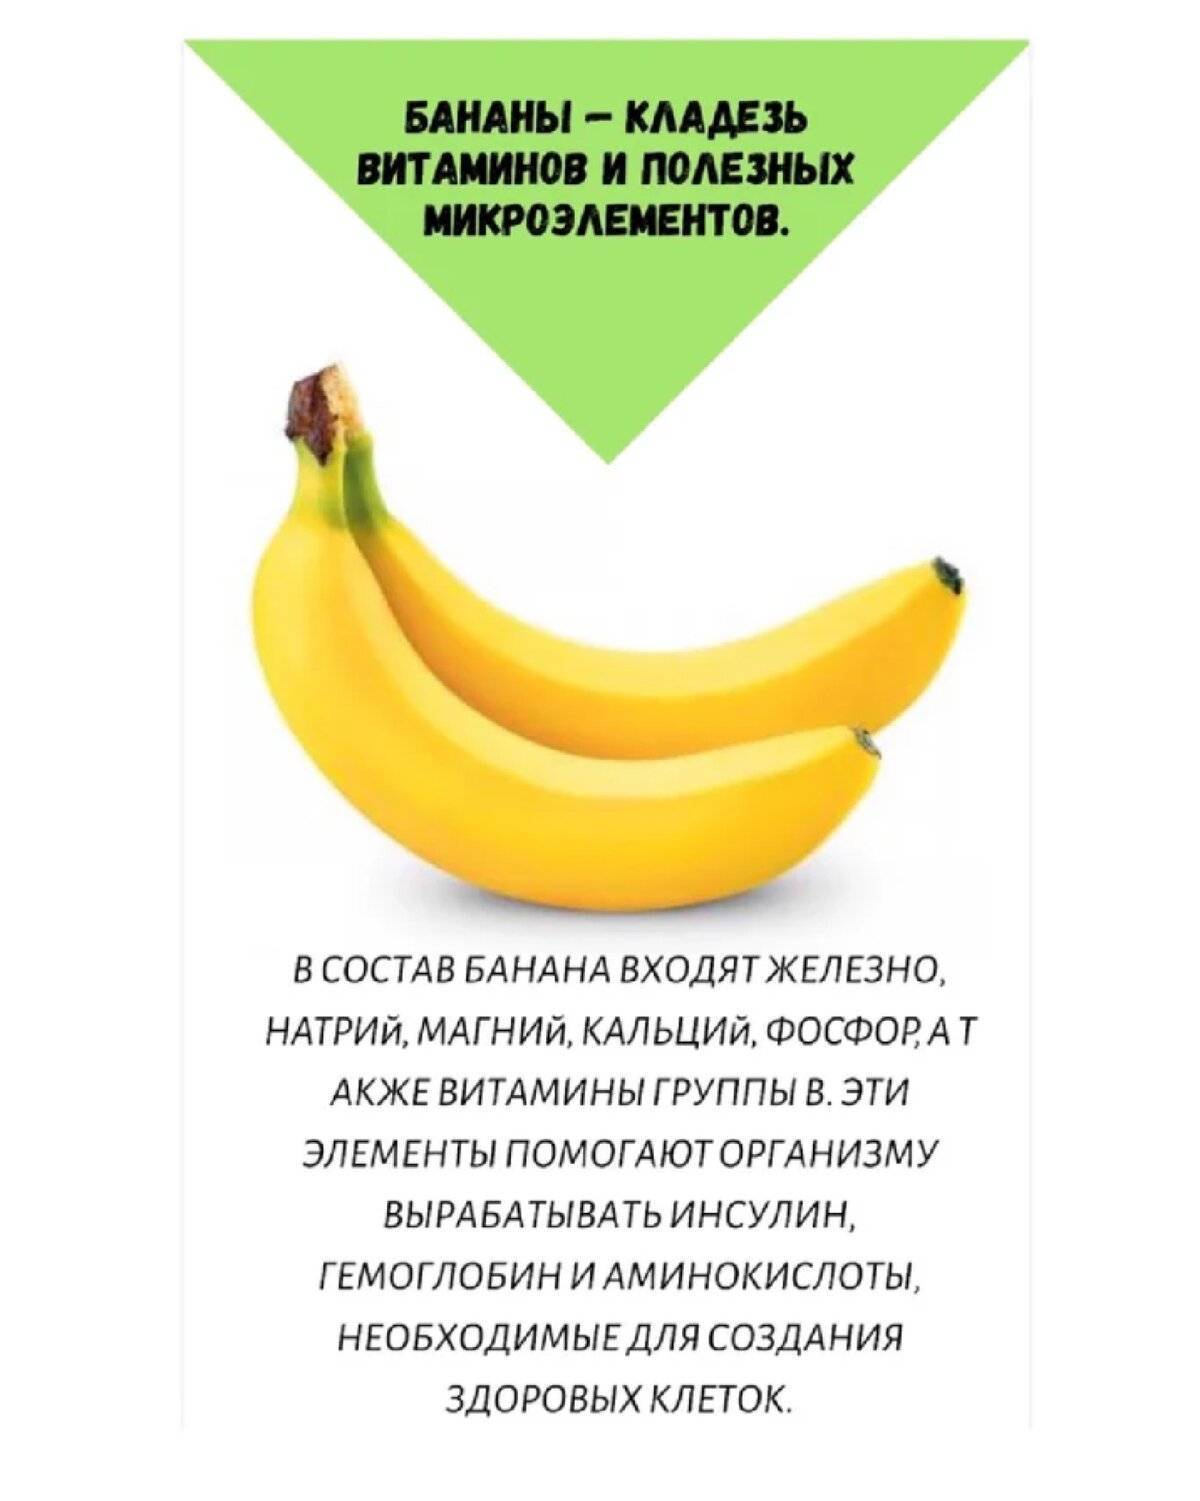 Банан после тренировки или перед: можно ли его съесть и что дает?